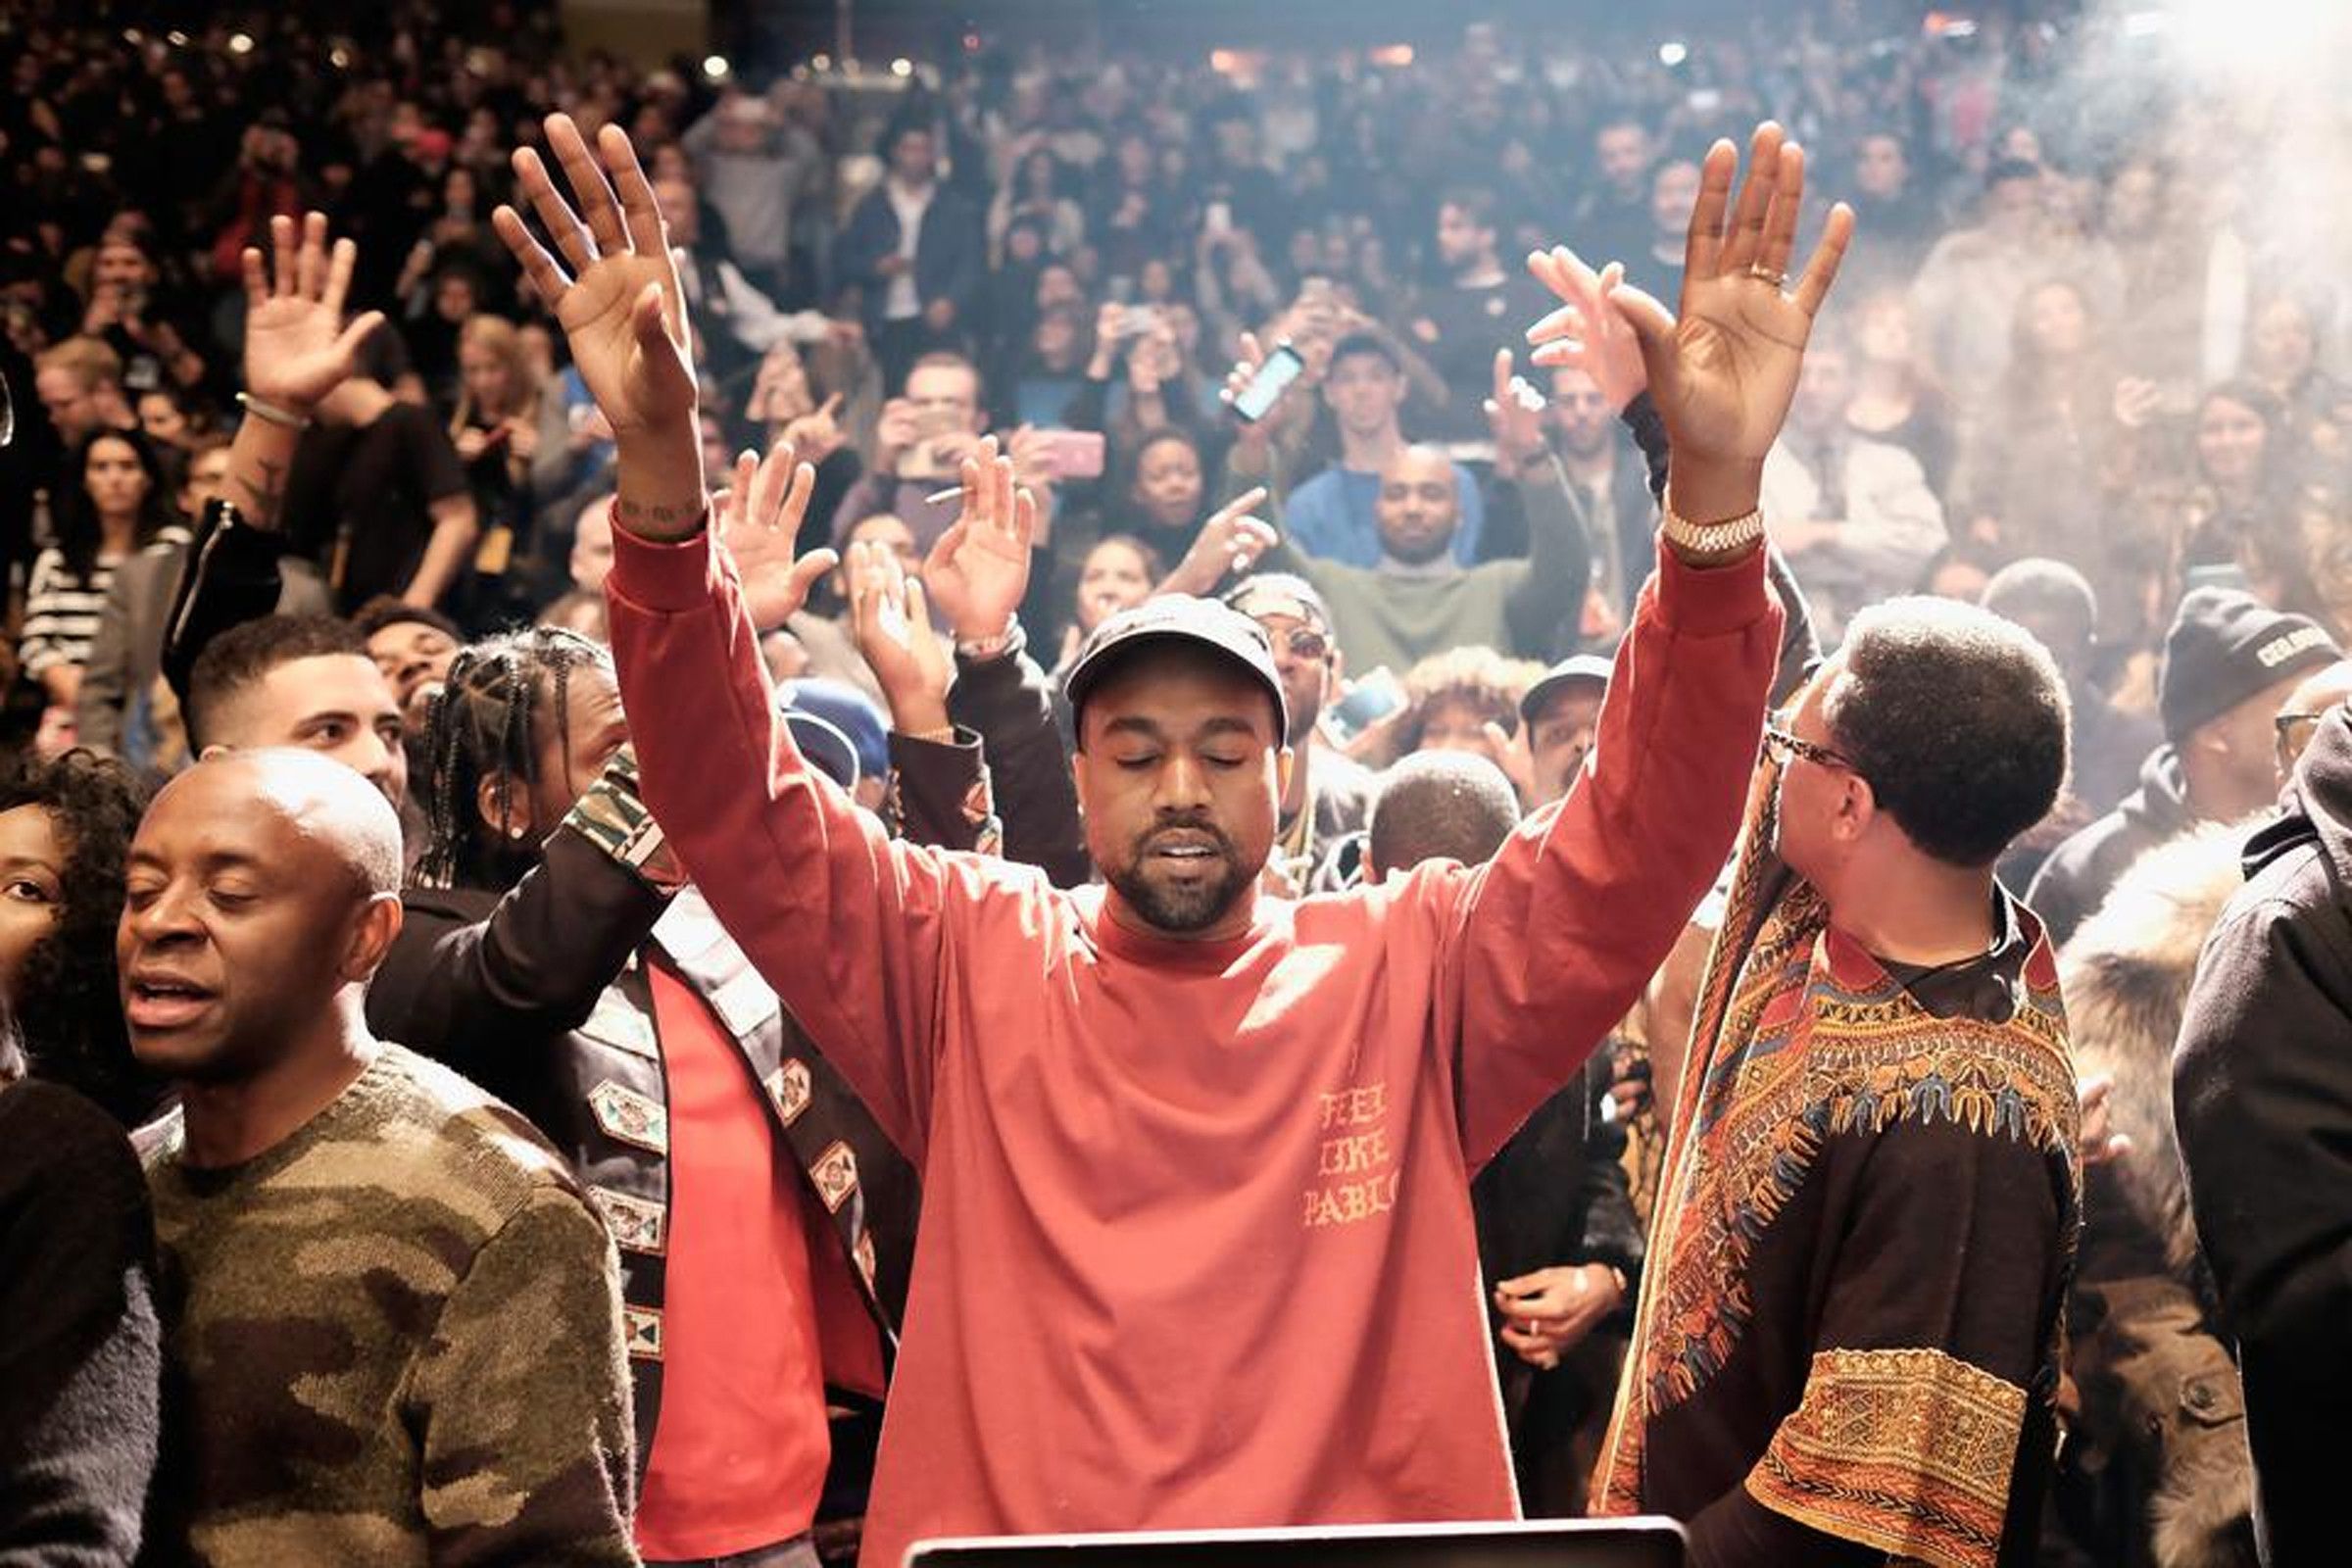 Kanye West attending the Louis Vuitton Gala Celebrating Murakami